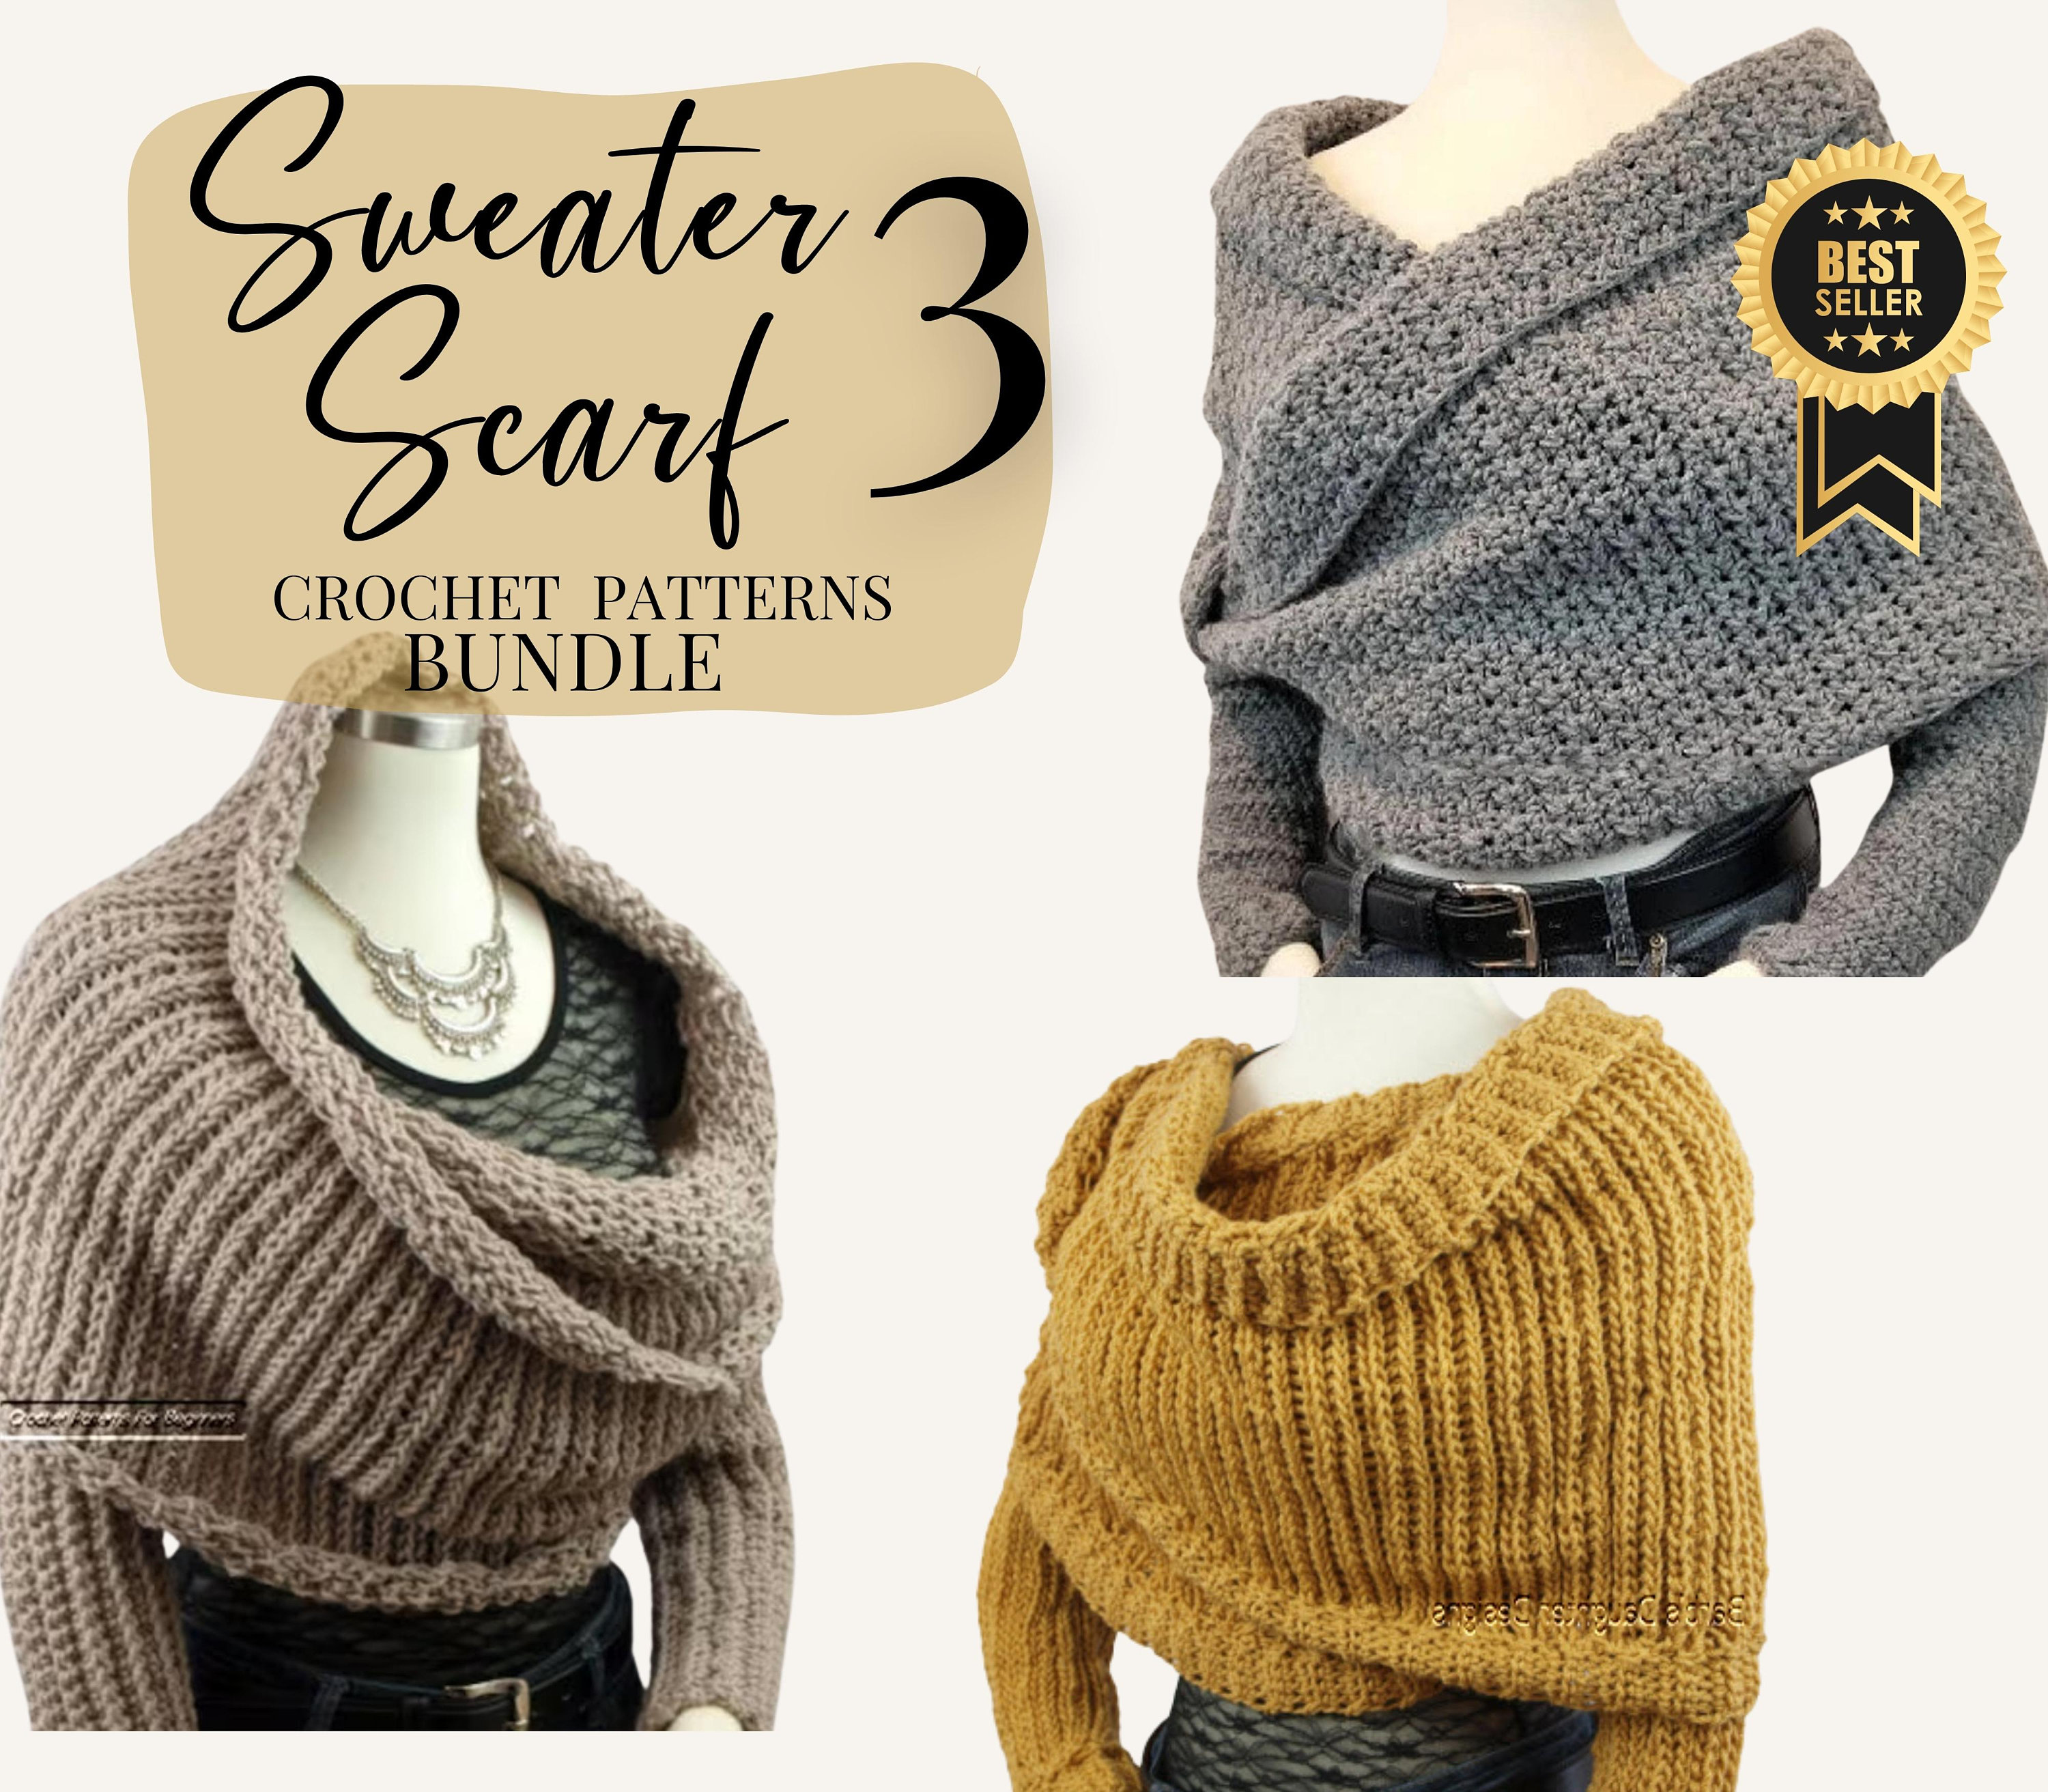 Crochet Patterns Bundle Sweater Scarf Crochet Patterns Crochet Shrug  Crossover Sweater Easy Crochet Instant Download PDF Pattern 